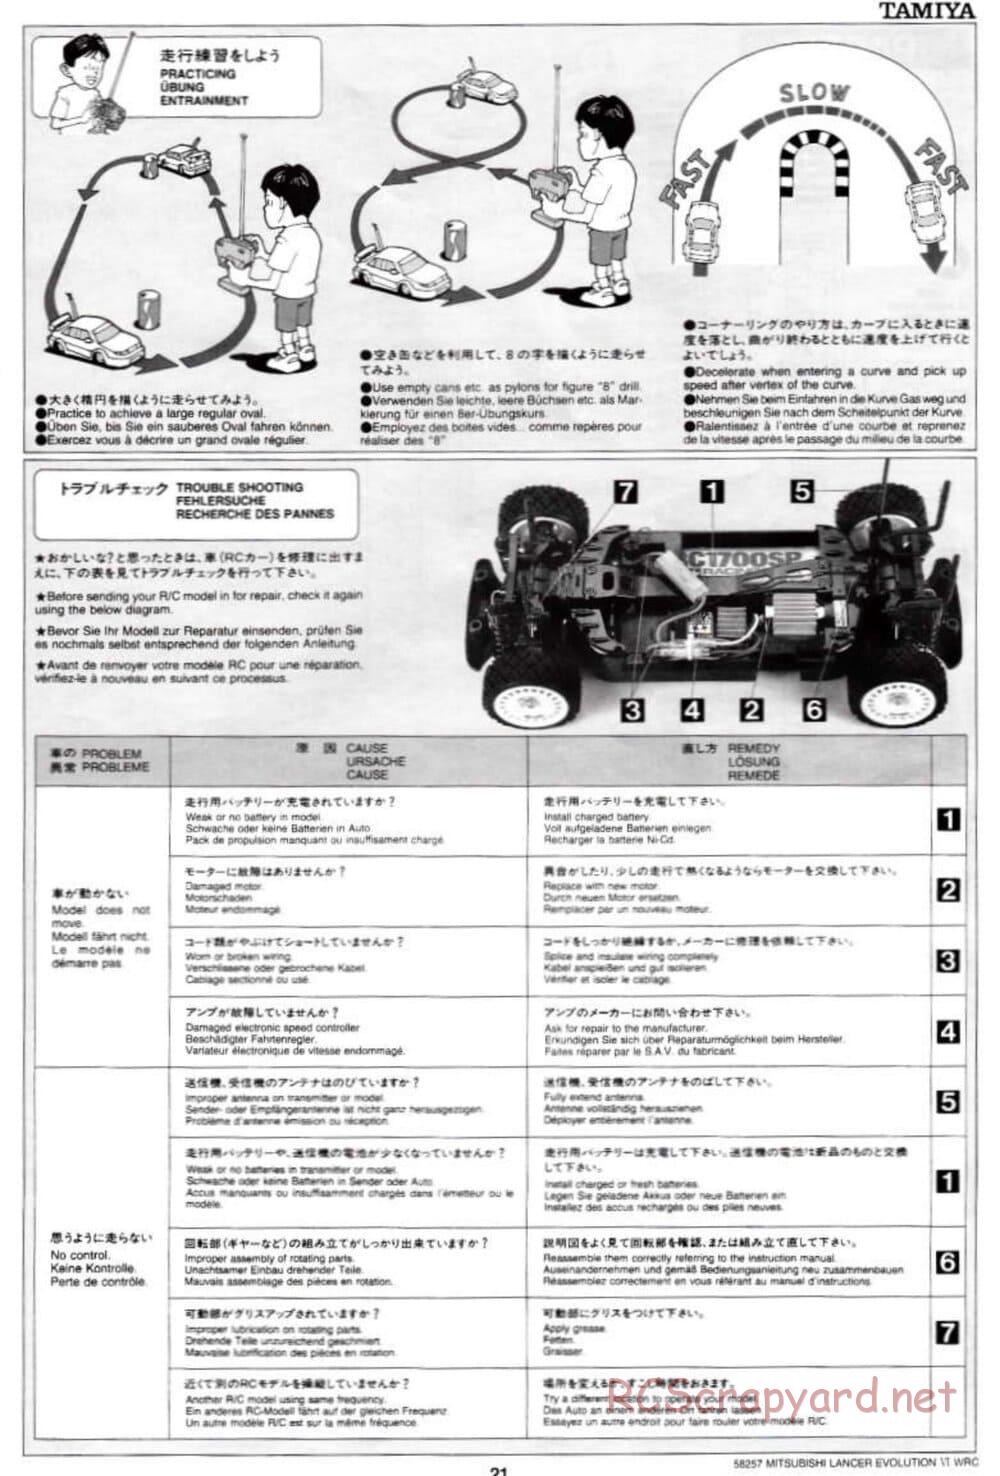 Tamiya - Mitsubishi Lancer Evolution VI WRC - TB-01 Chassis - Manual - Page 21